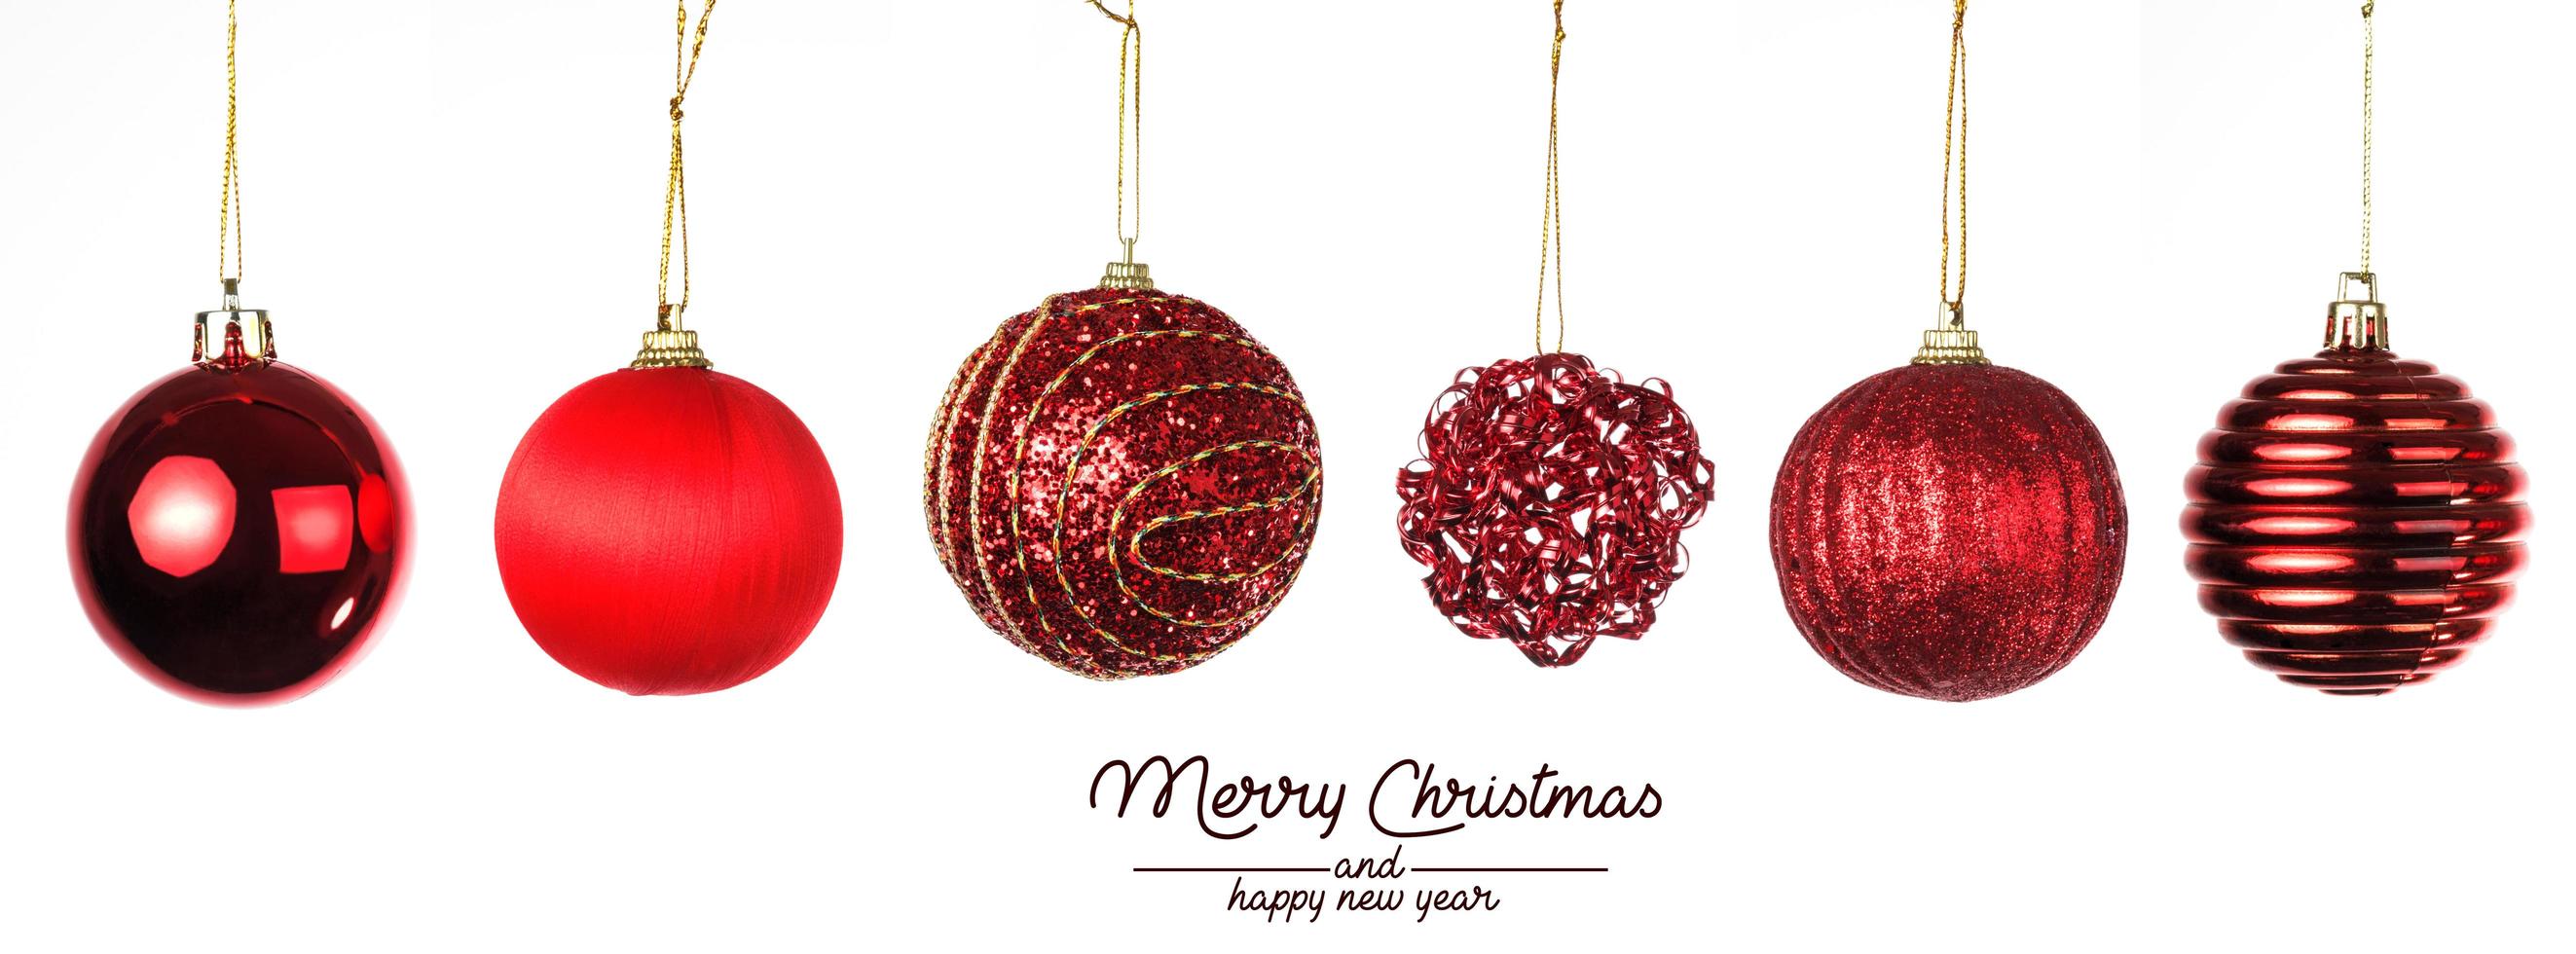 composición navideña. bolas de navidad con rojo sobre fondo blanco. foto